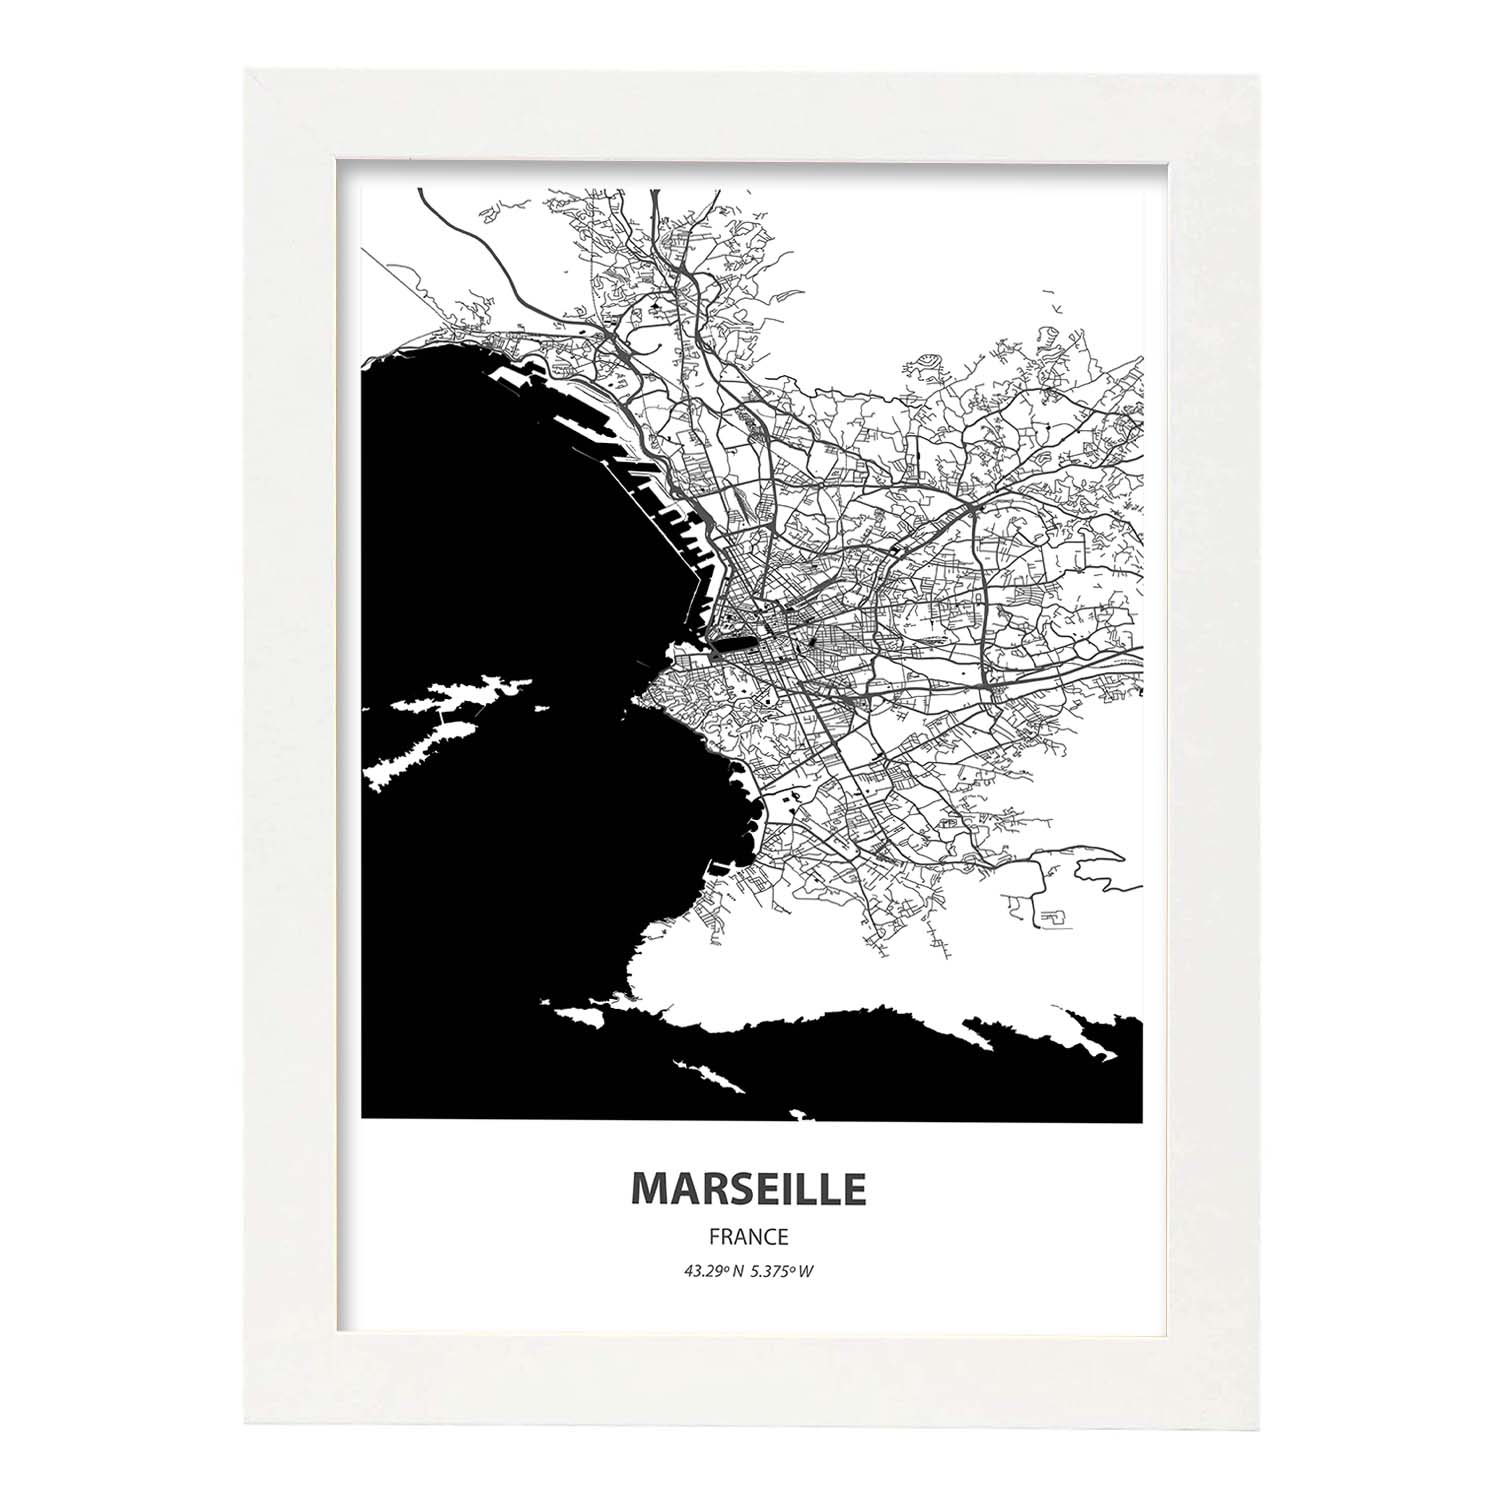 Poster con mapa de Marselle - Francia. Láminas de ciudades de Francia con mares y ríos en color negro.-Artwork-Nacnic-A3-Marco Blanco-Nacnic Estudio SL